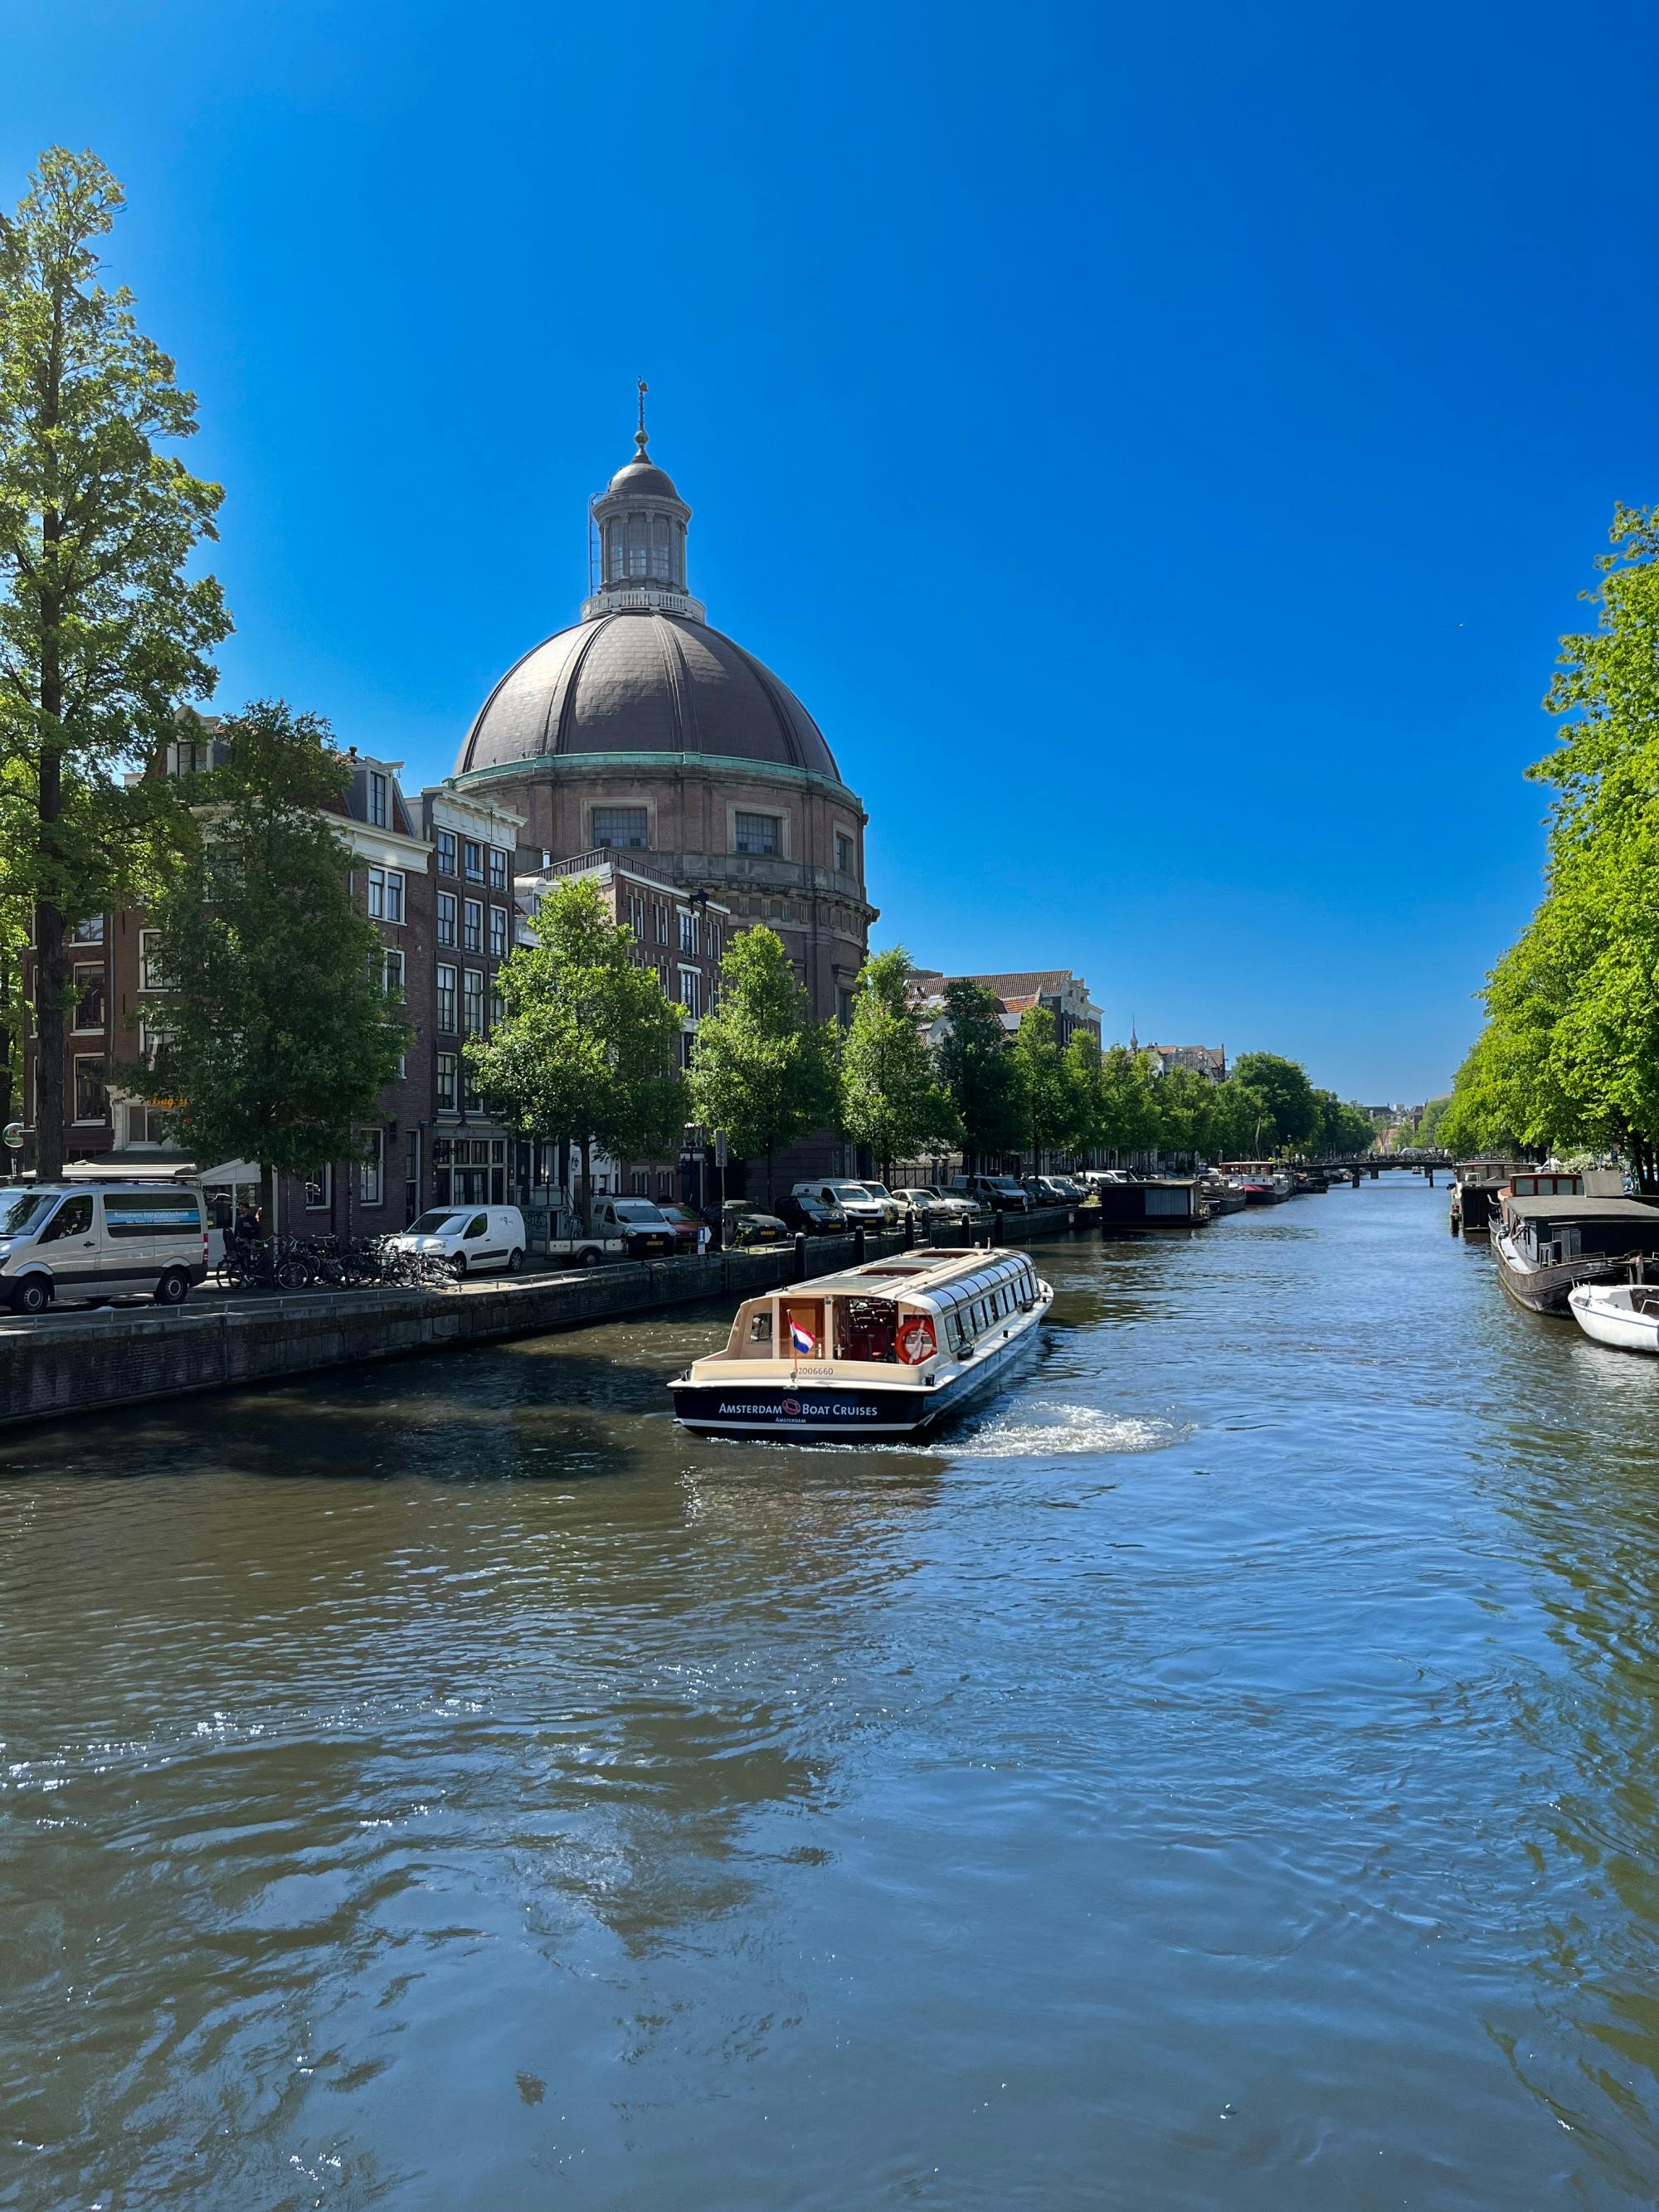 75-minütige Grachtenrundfahrt zu den Highlights von Amsterdam